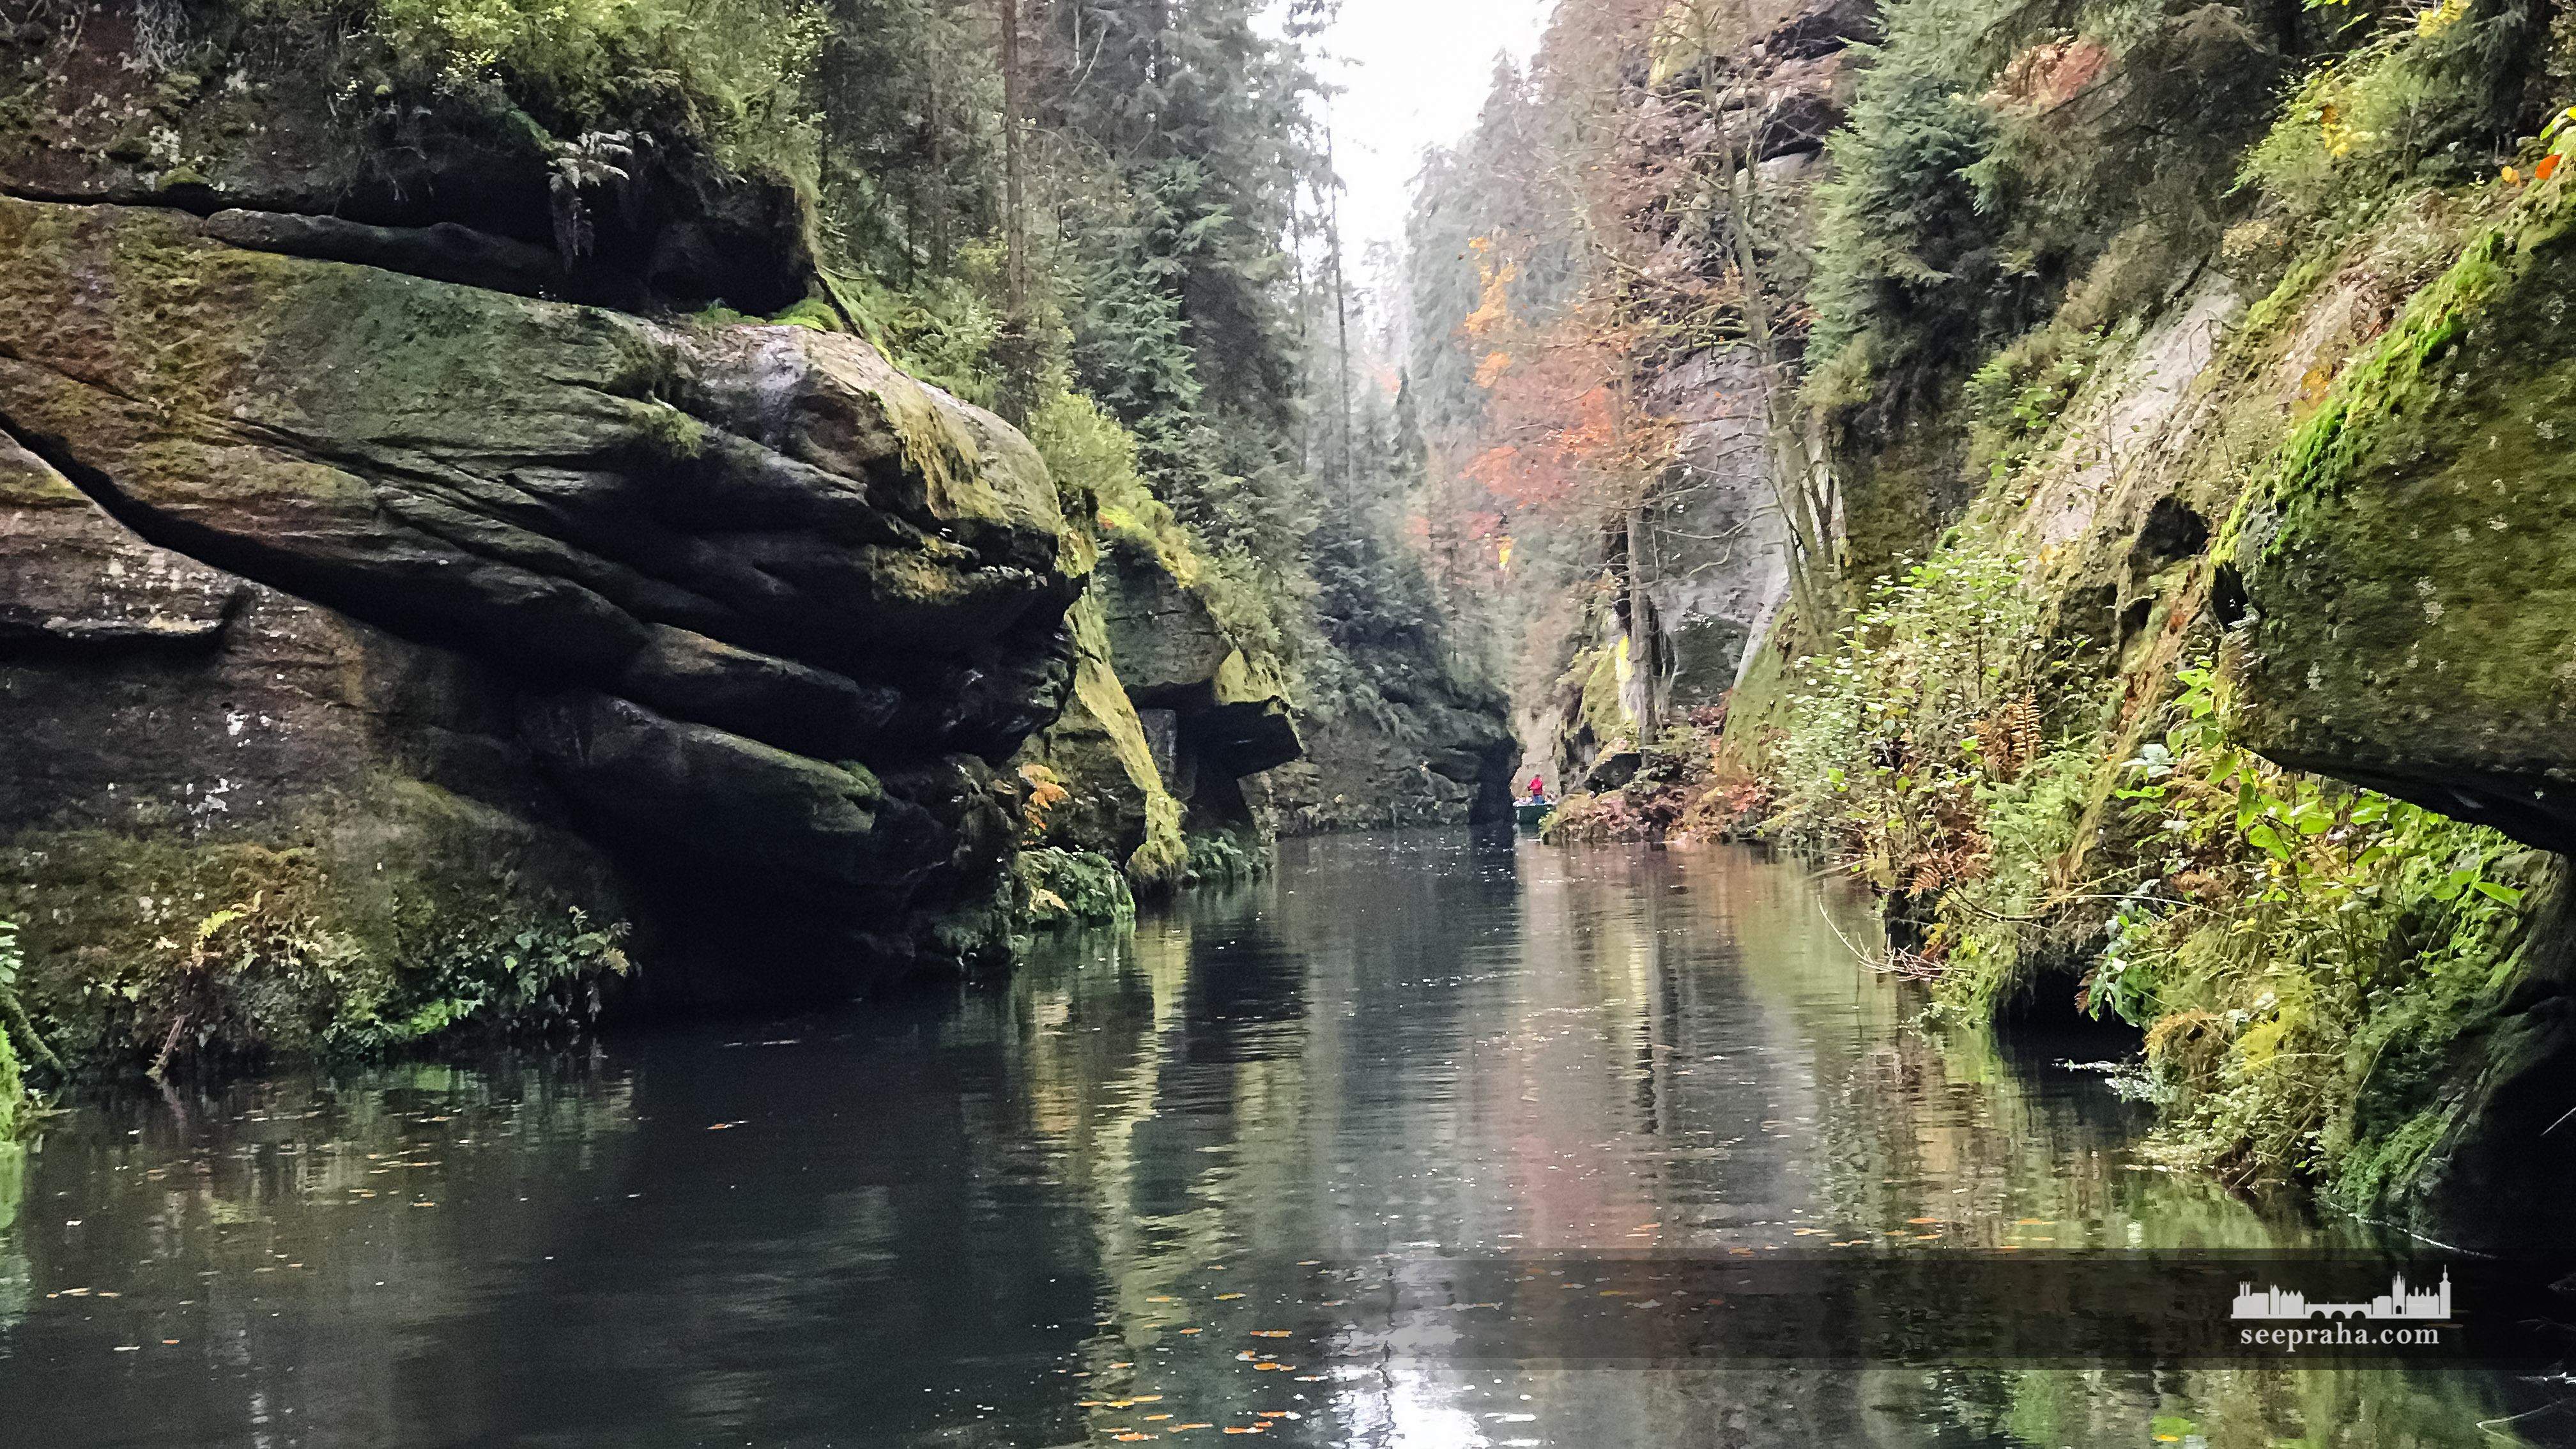 Ein romantischer Spaziergang mit einem Boot an dem Fluss Kamenice in der Edmundsklamm, Böhmische Schweiz, Tschechien